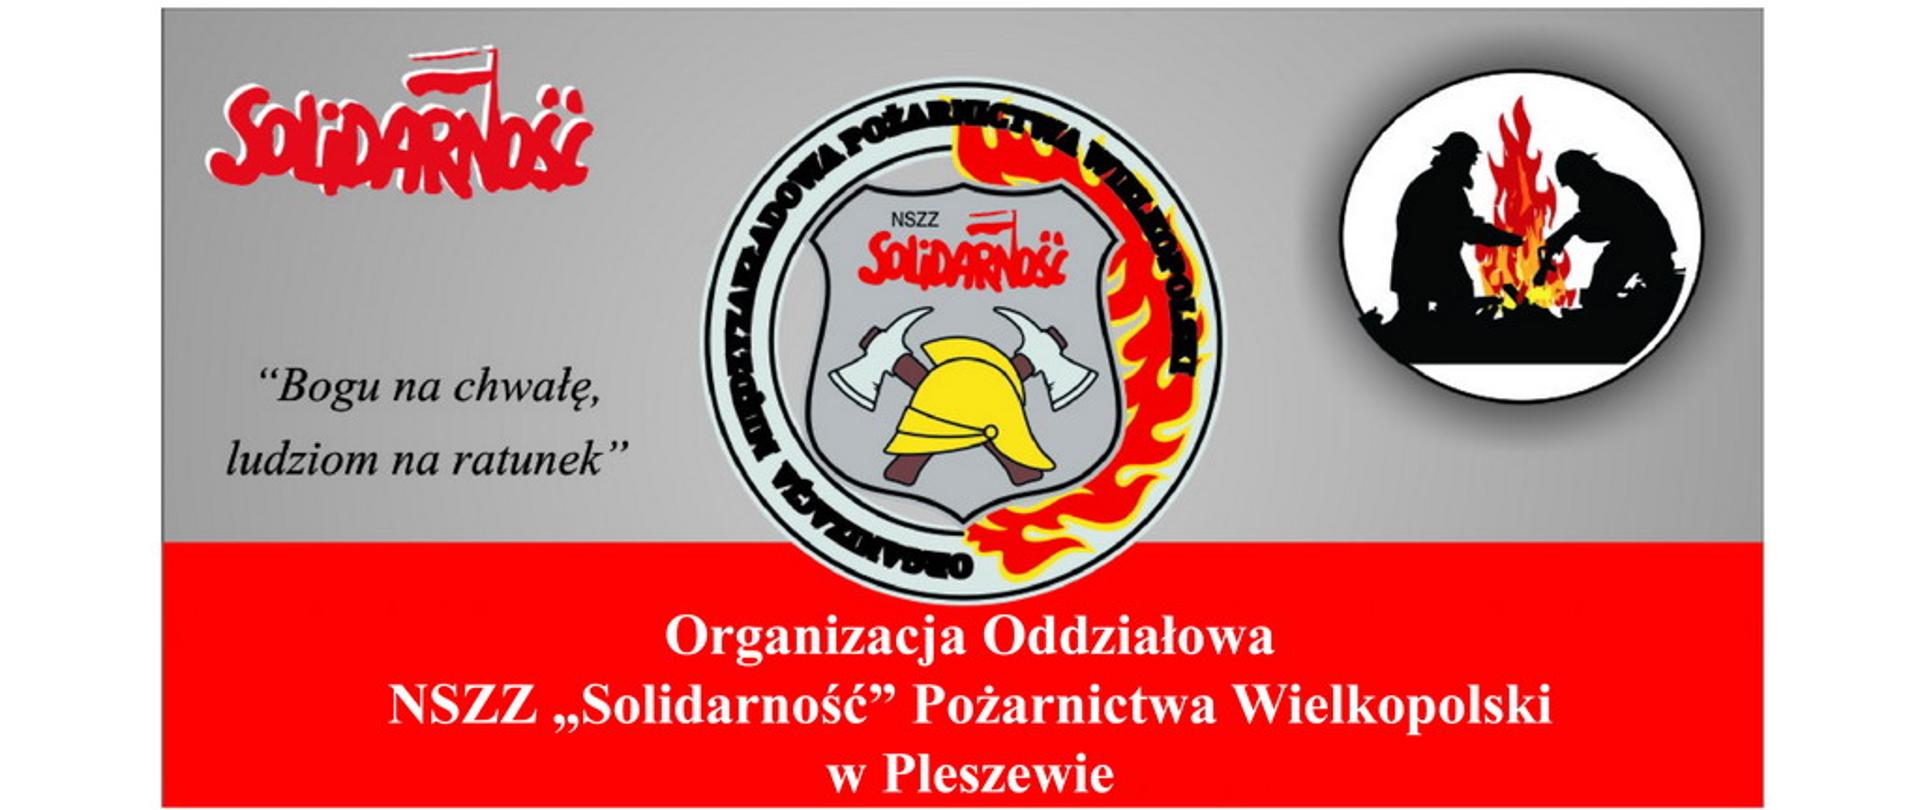 Logotyp Organizacji Oddziałowej NSZZ Solidarność Pożarnictwa Wielkopolski w Pleszewie